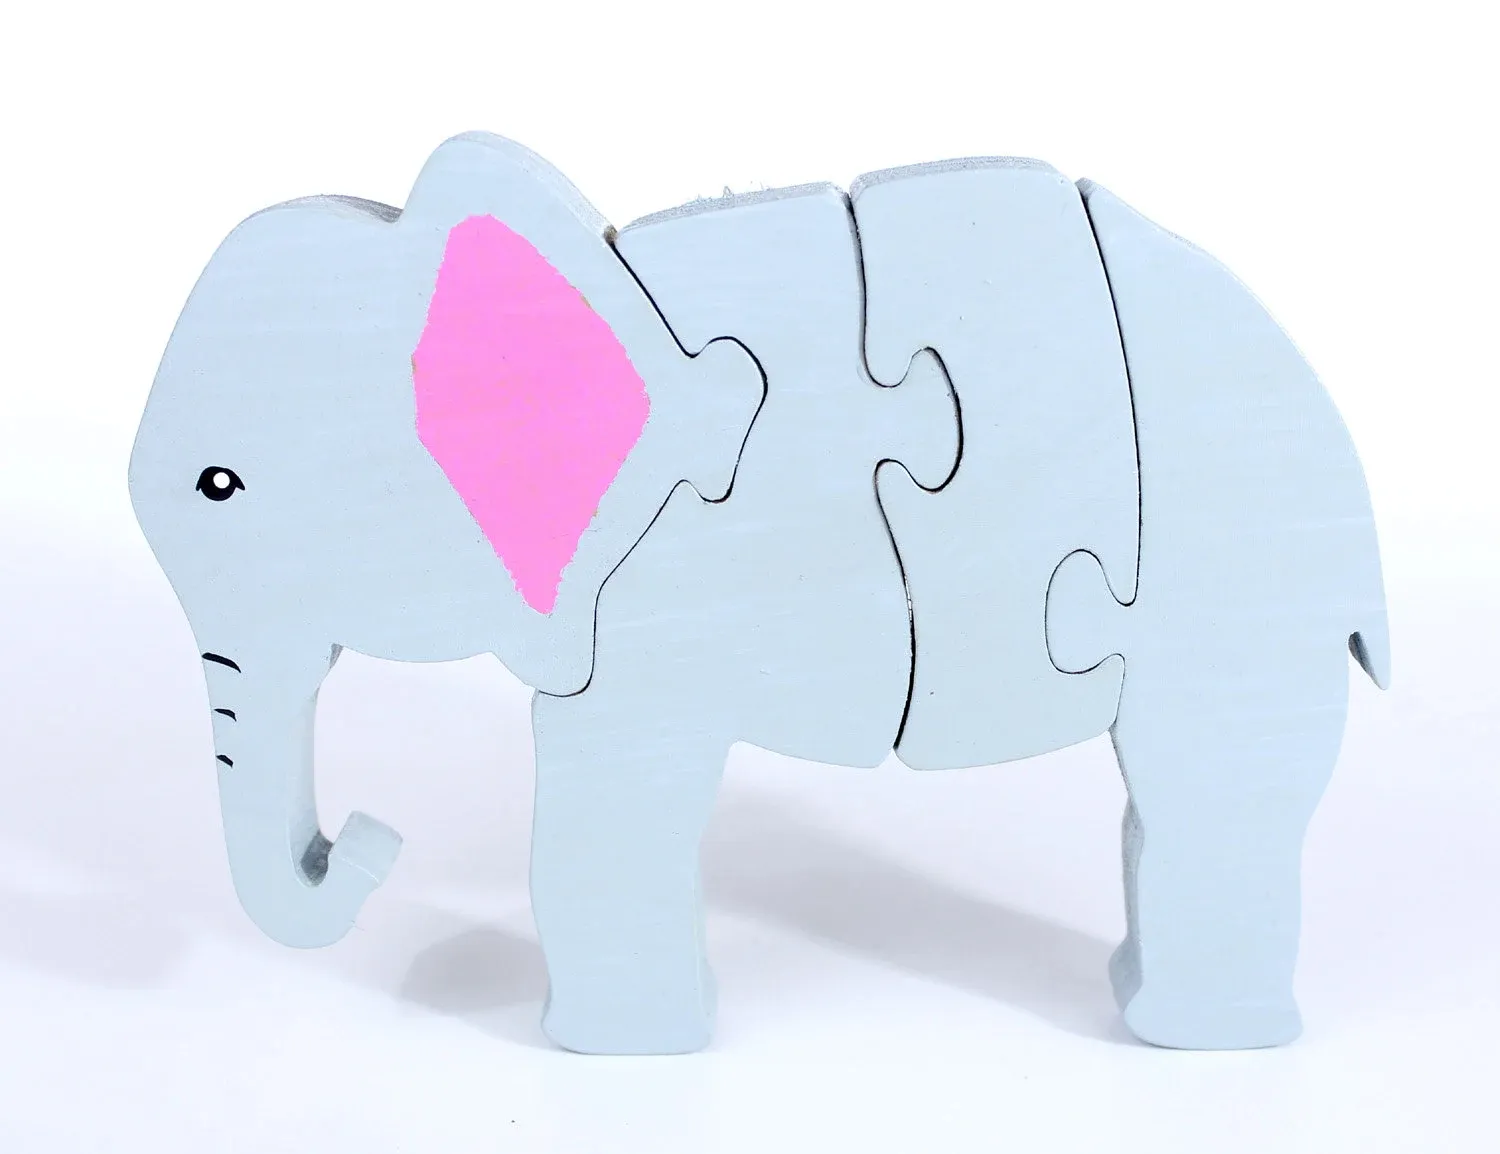 WANHUA fil bulmaca çocuk oyuncak çocuk dekor el yapımı bulmaca ahşap oyuncak